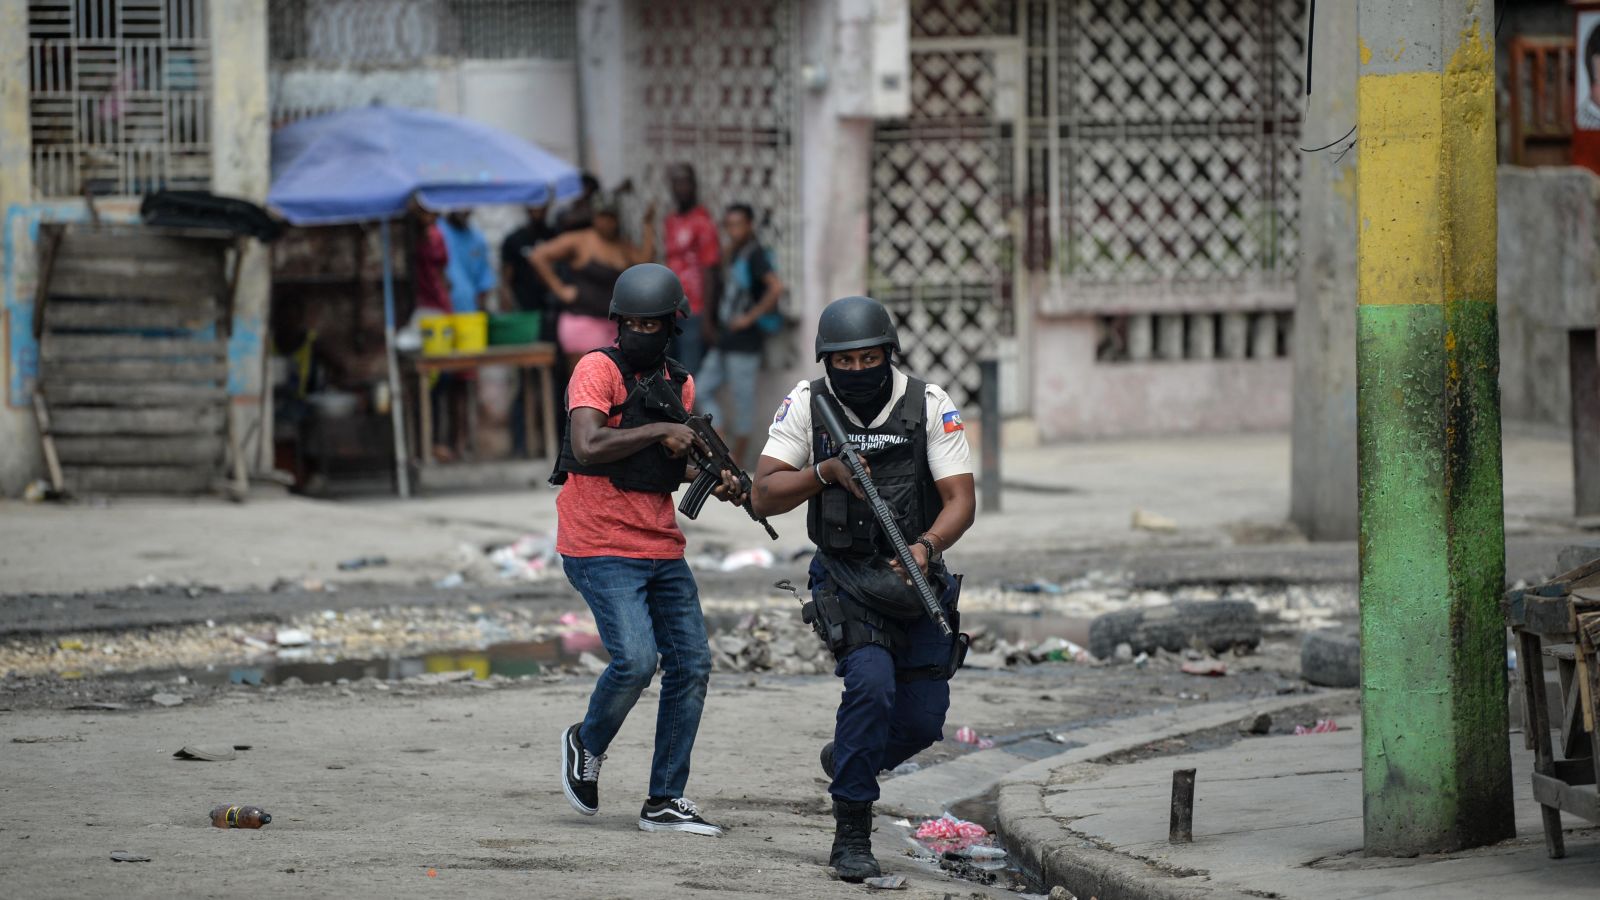 violencia de las pandillas se extiende a las zonas rurales de haití, revela informe de la onu